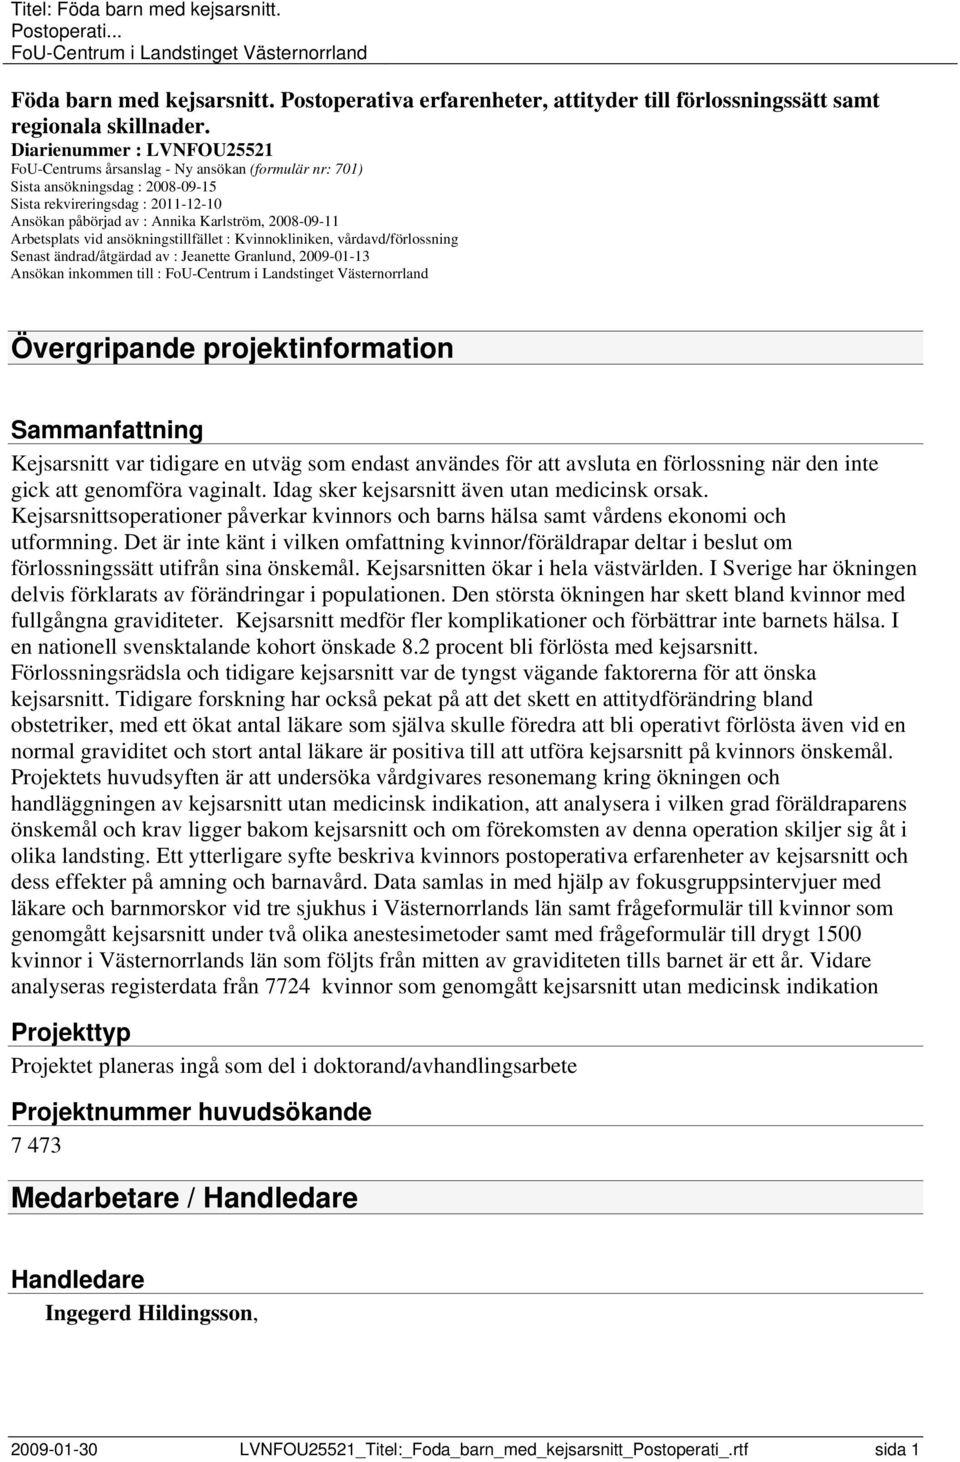 2008-09-11 Arbetsplats vid ansökningstillfället : Kvinnokliniken, vårdavd/förlossning Senast ändrad/åtgärdad av : Jeanette Granlund, 2009-01-13 Ansökan inkommen till : Övergripande projektinformation